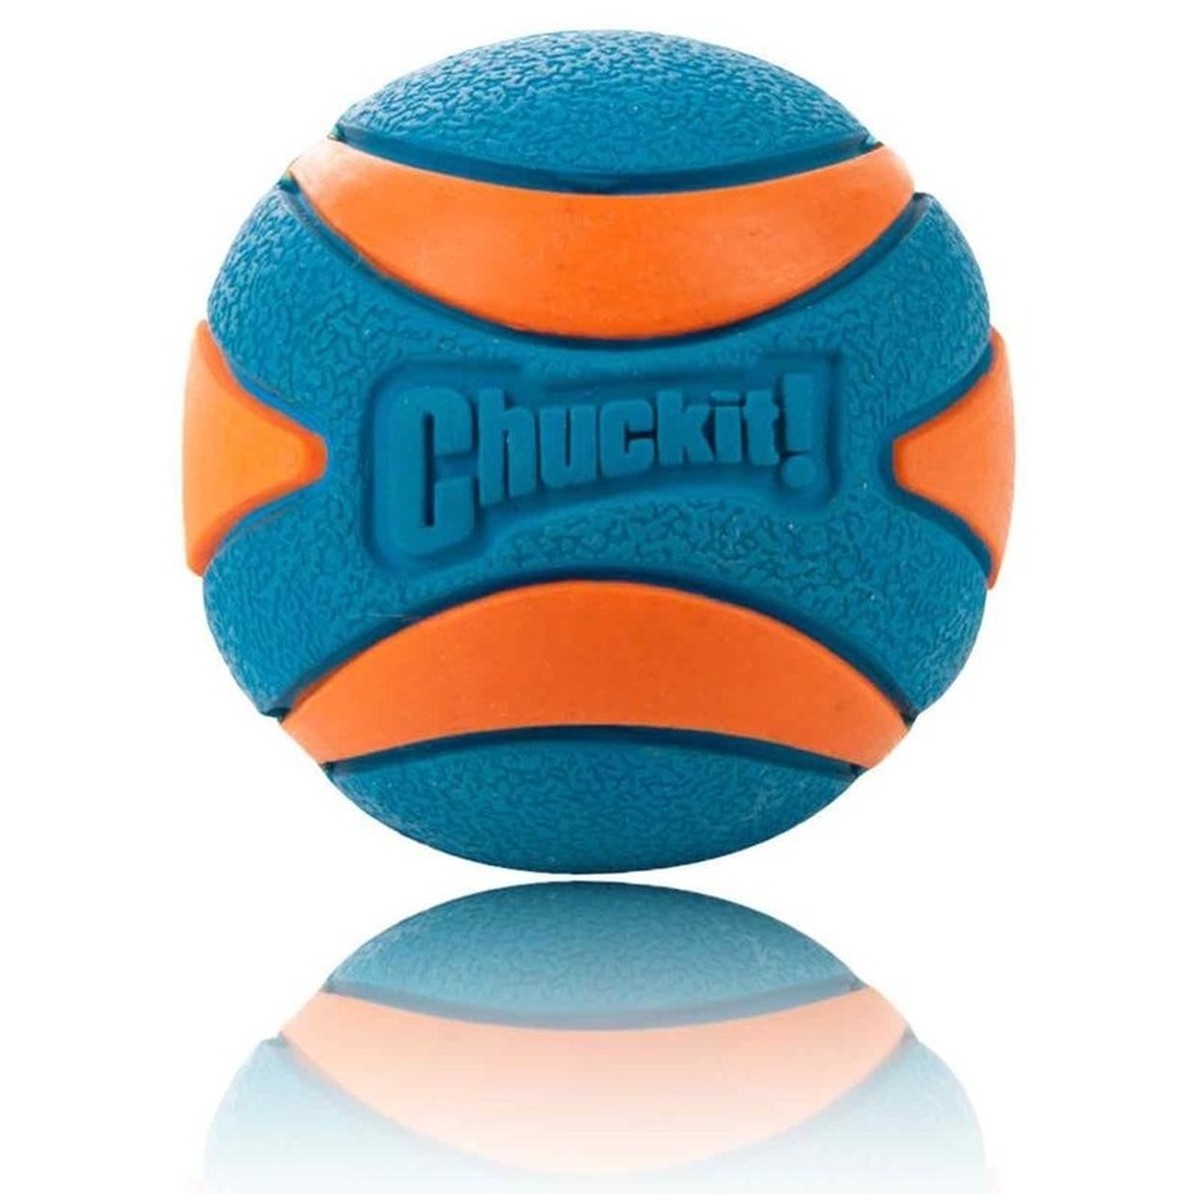 chuckit squeaker ball